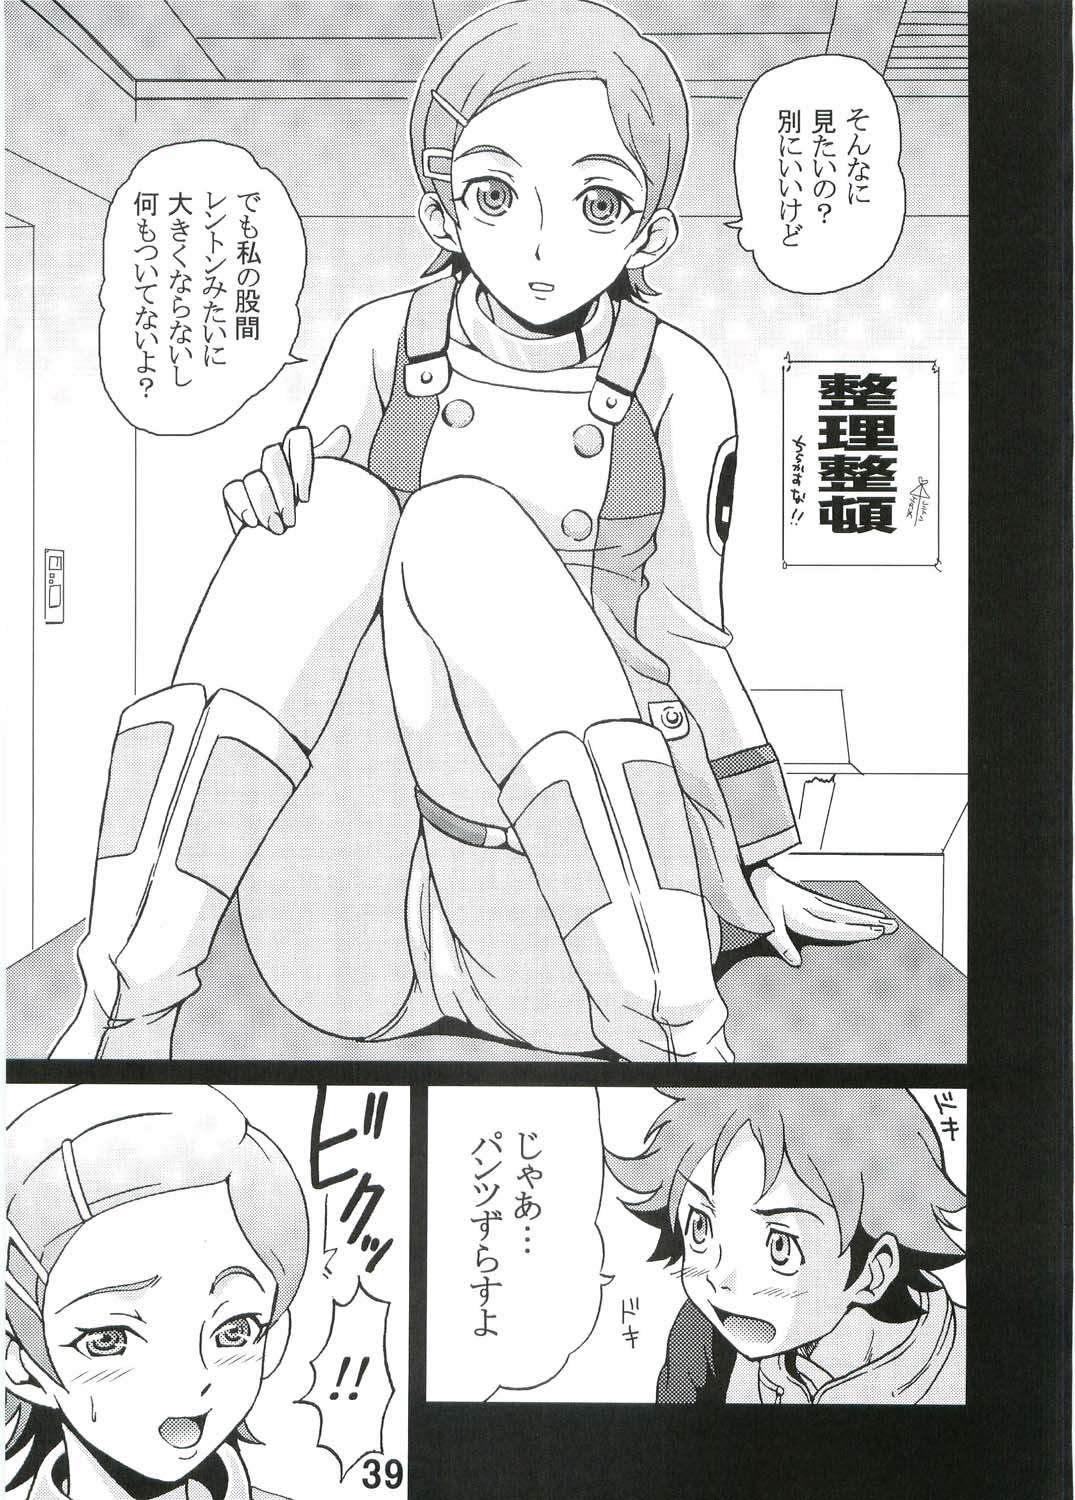 [St. Rio (Kitty, Kouenji Rei)] Ura ray-out (Eureka seveN) page 40 full